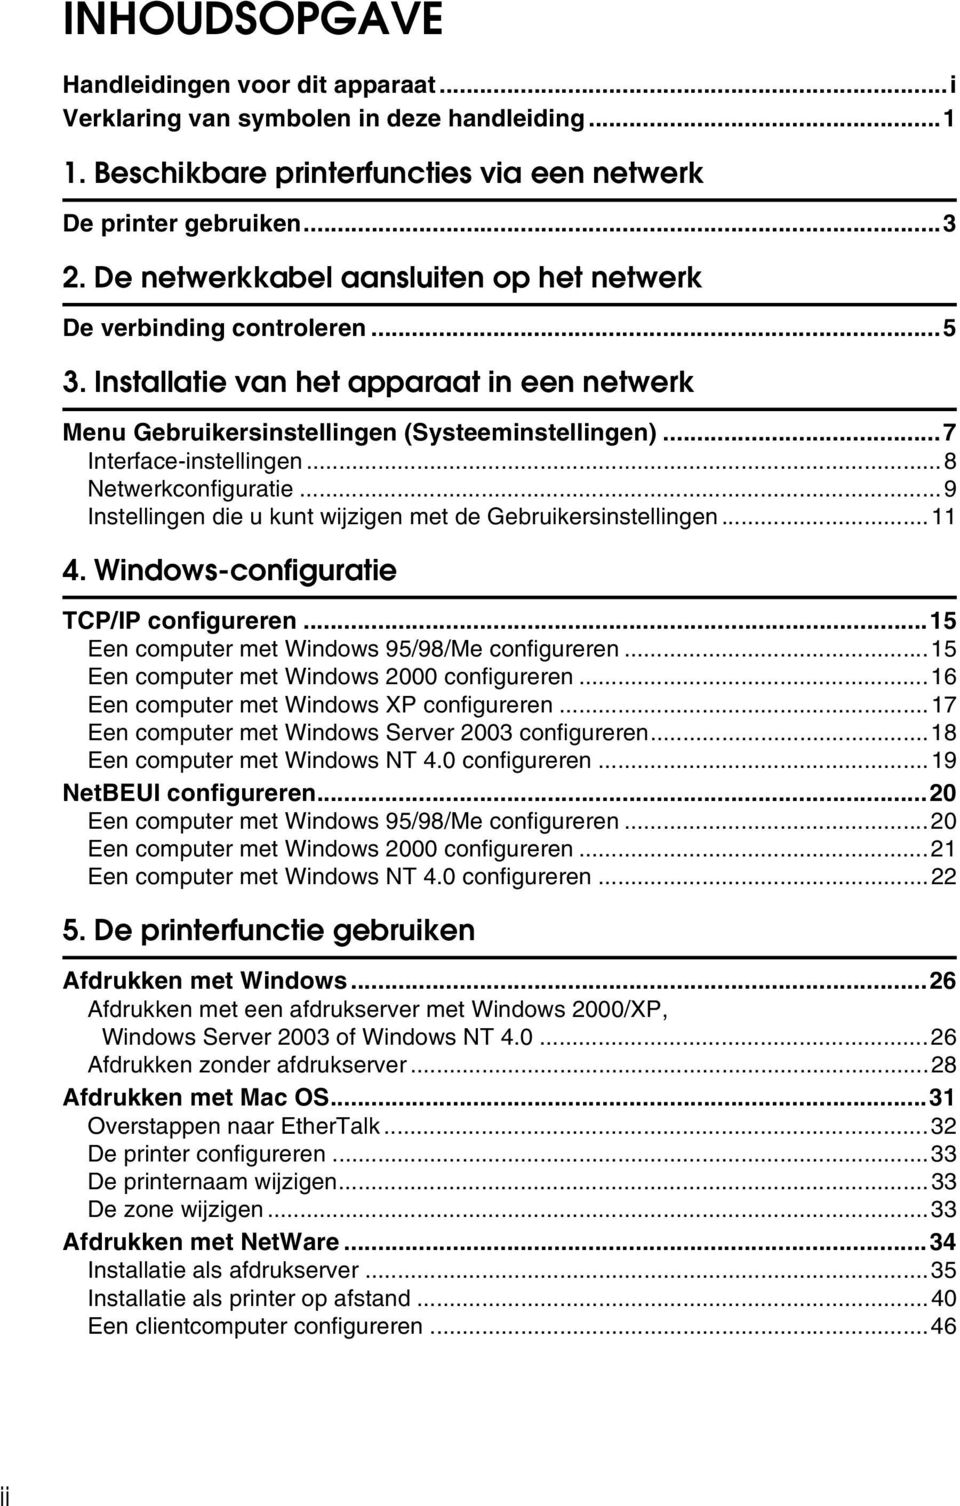 ..8 Netwerkconfiguratie...9 Instellingen die u kunt wijzigen met de Gebruikersinstellingen...11 4. Windows-configuratie TCP/IP configureren...15 Een computer met Windows 95/98/Me configureren.